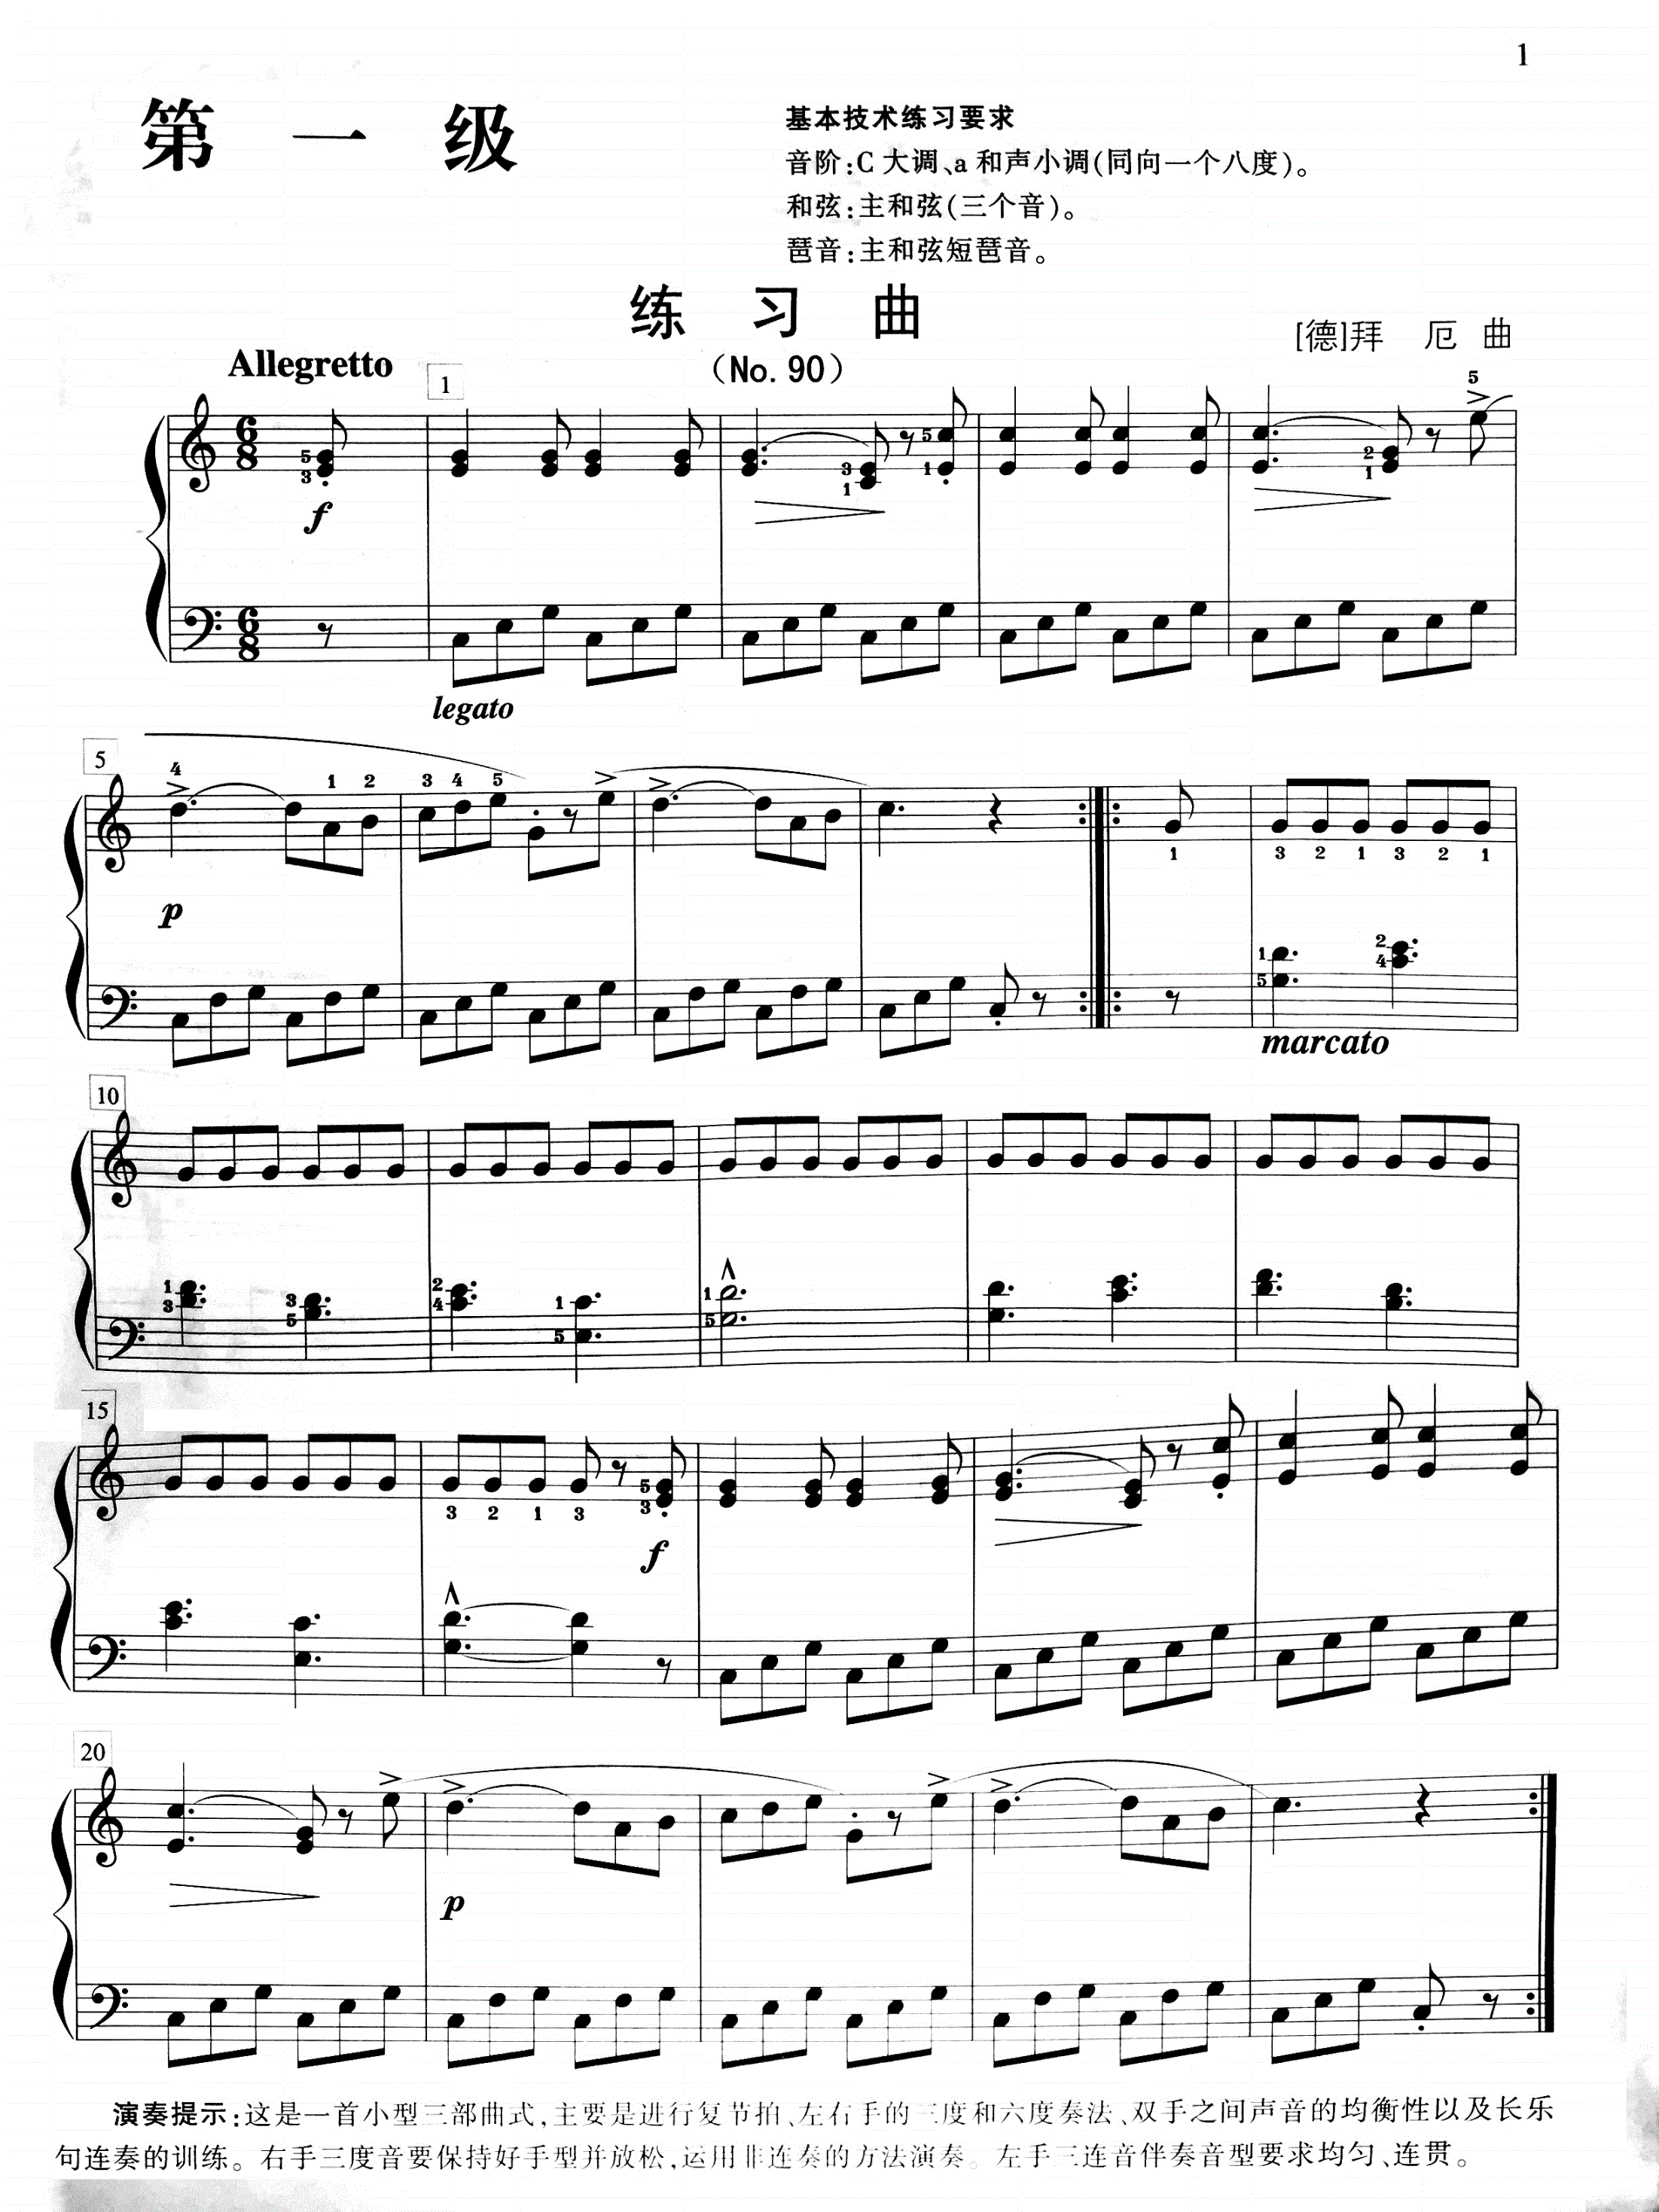 八级钢琴考级曲谱(八级钢琴考级曲目谱子)